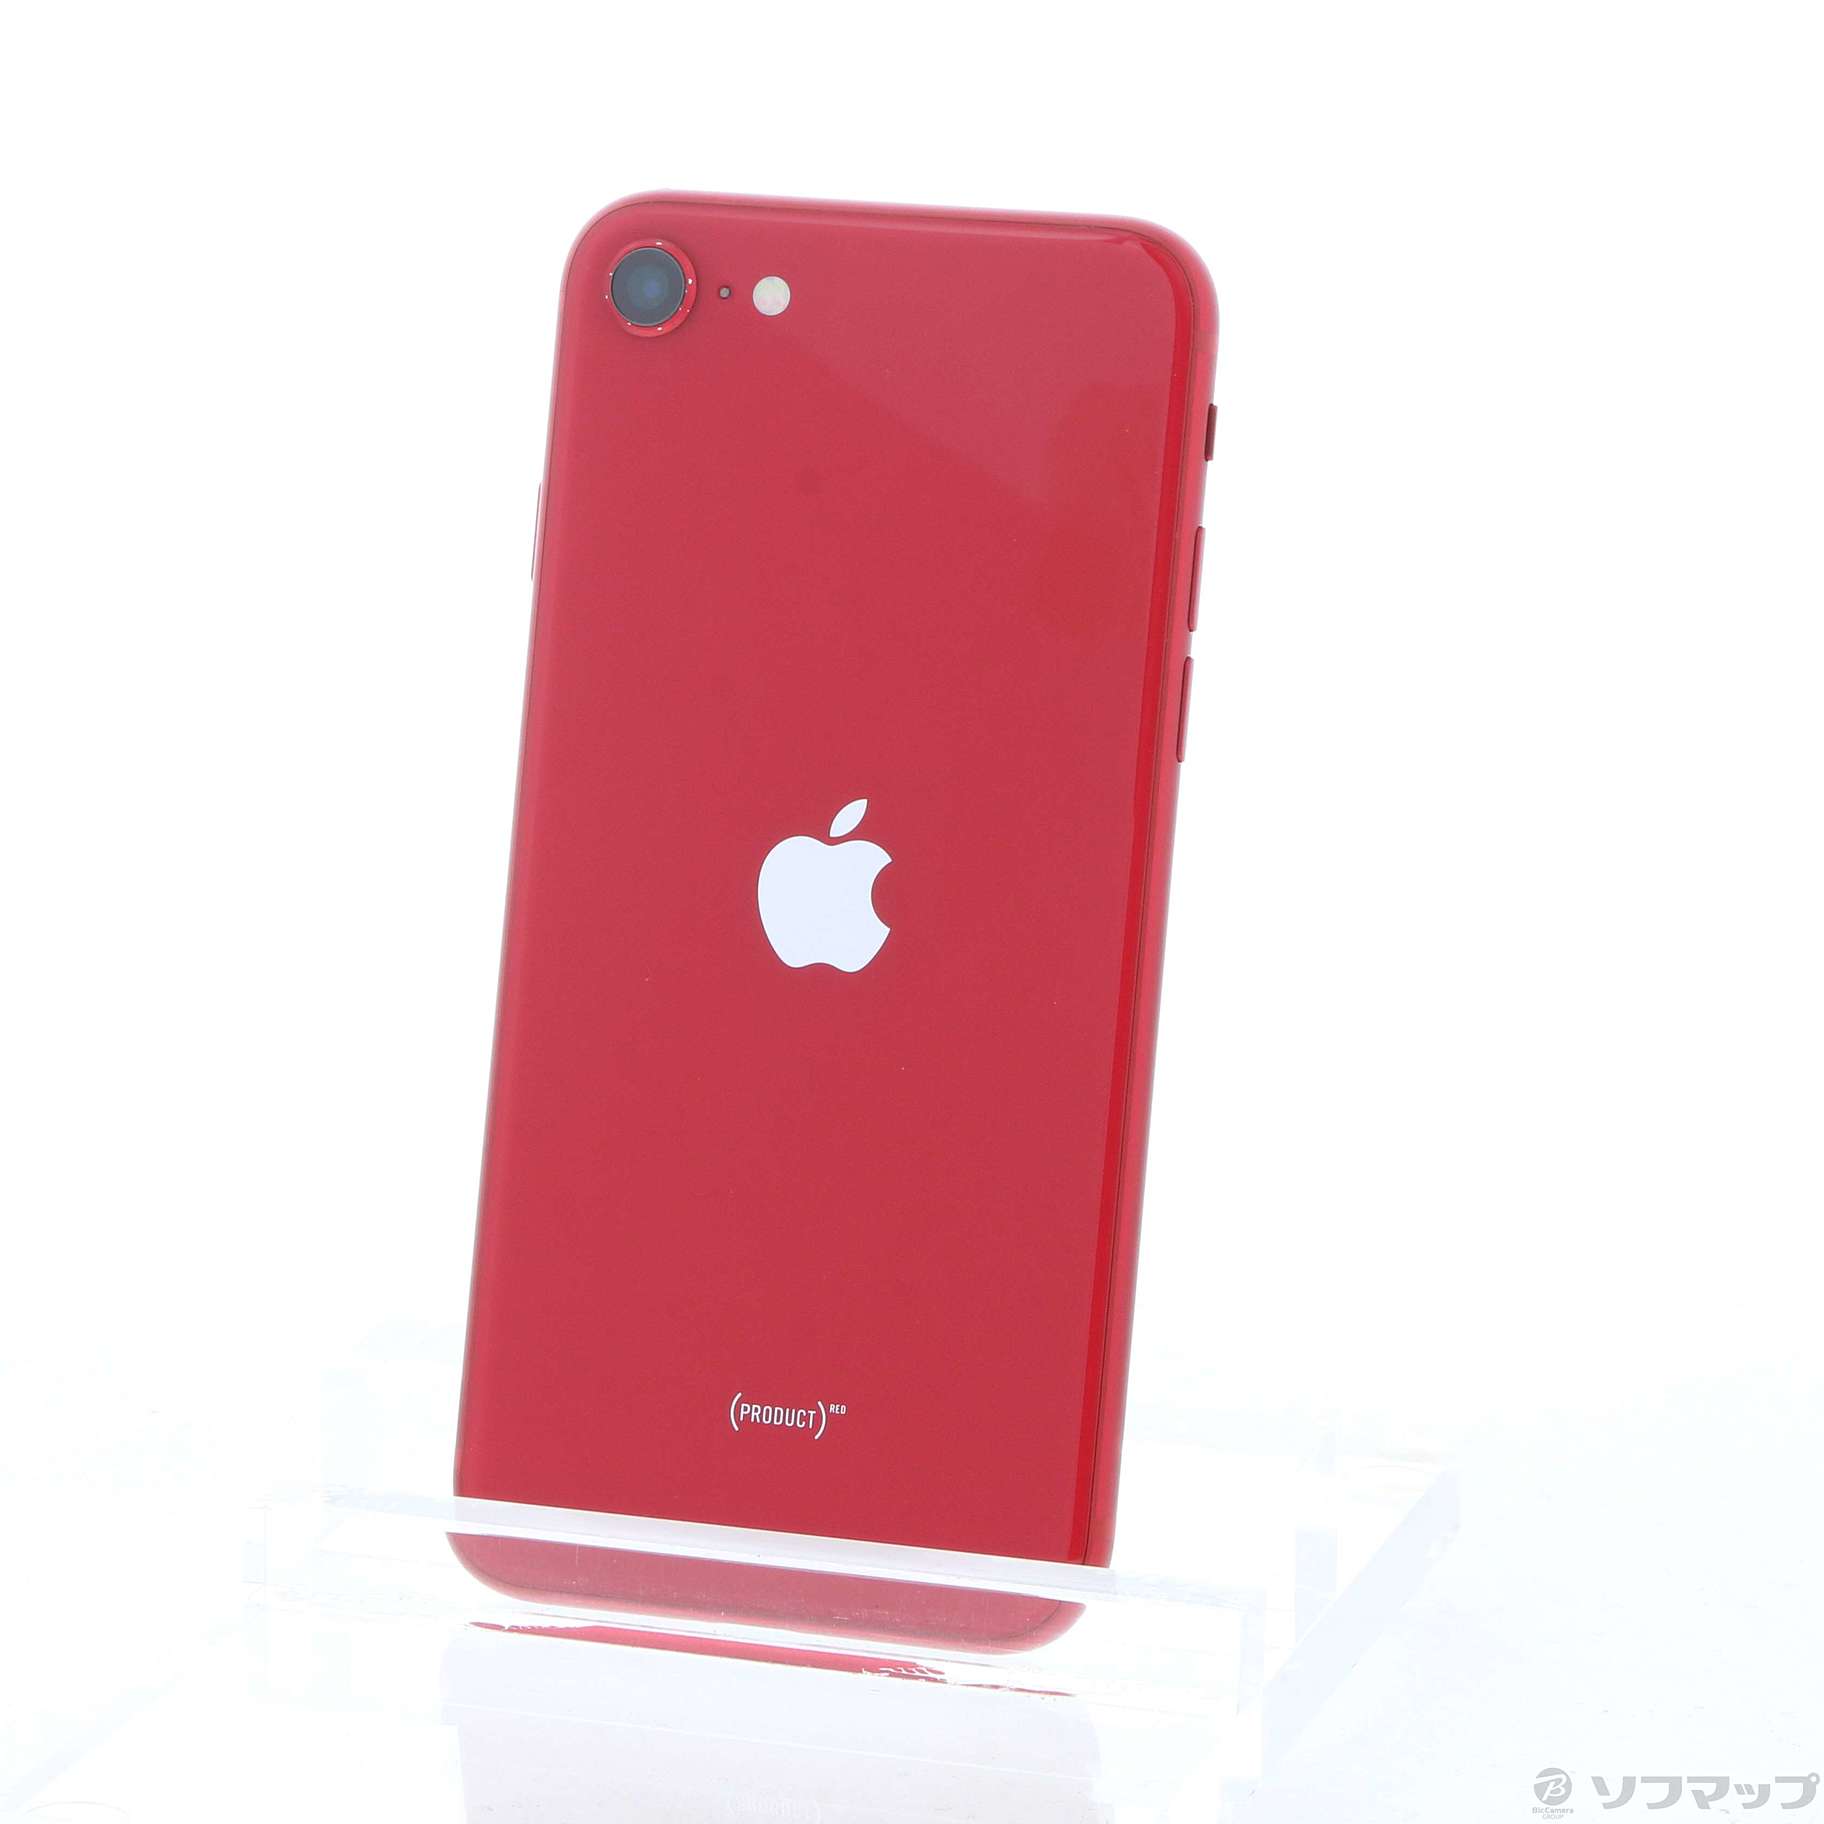 B iPhone SE 第2世代 (SE2) レッド 128 GB SIMフリー